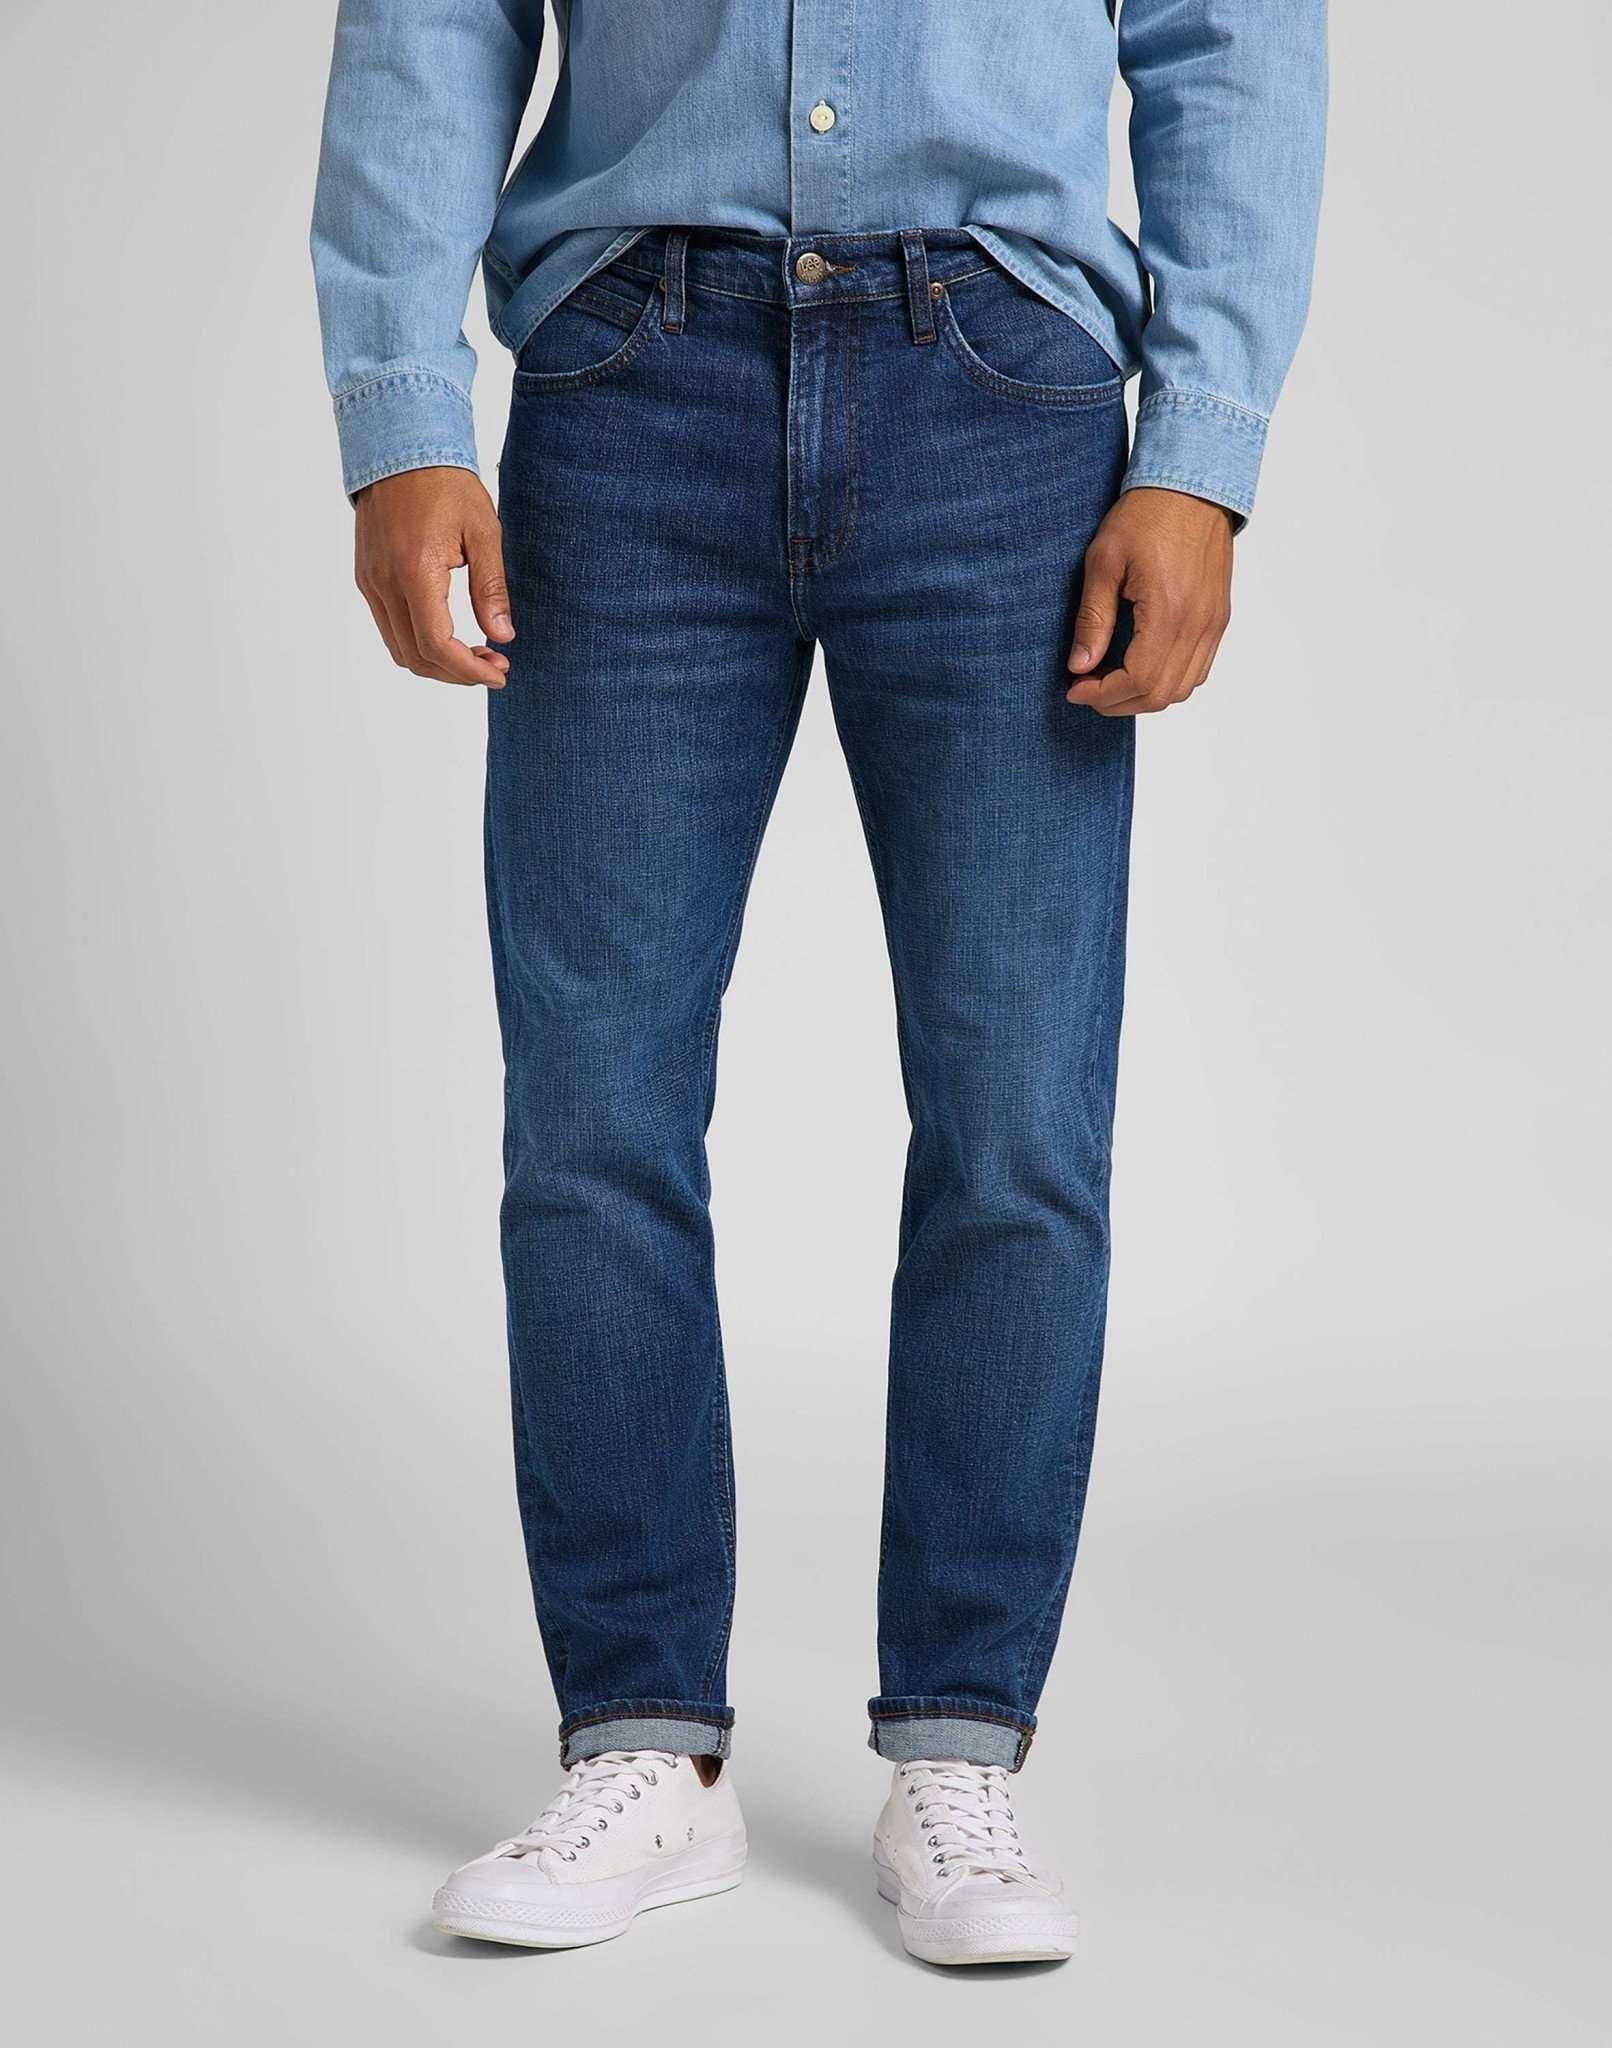 Jeans Straight Leg Austin Herren Blau Denim L32/W36 von Lee